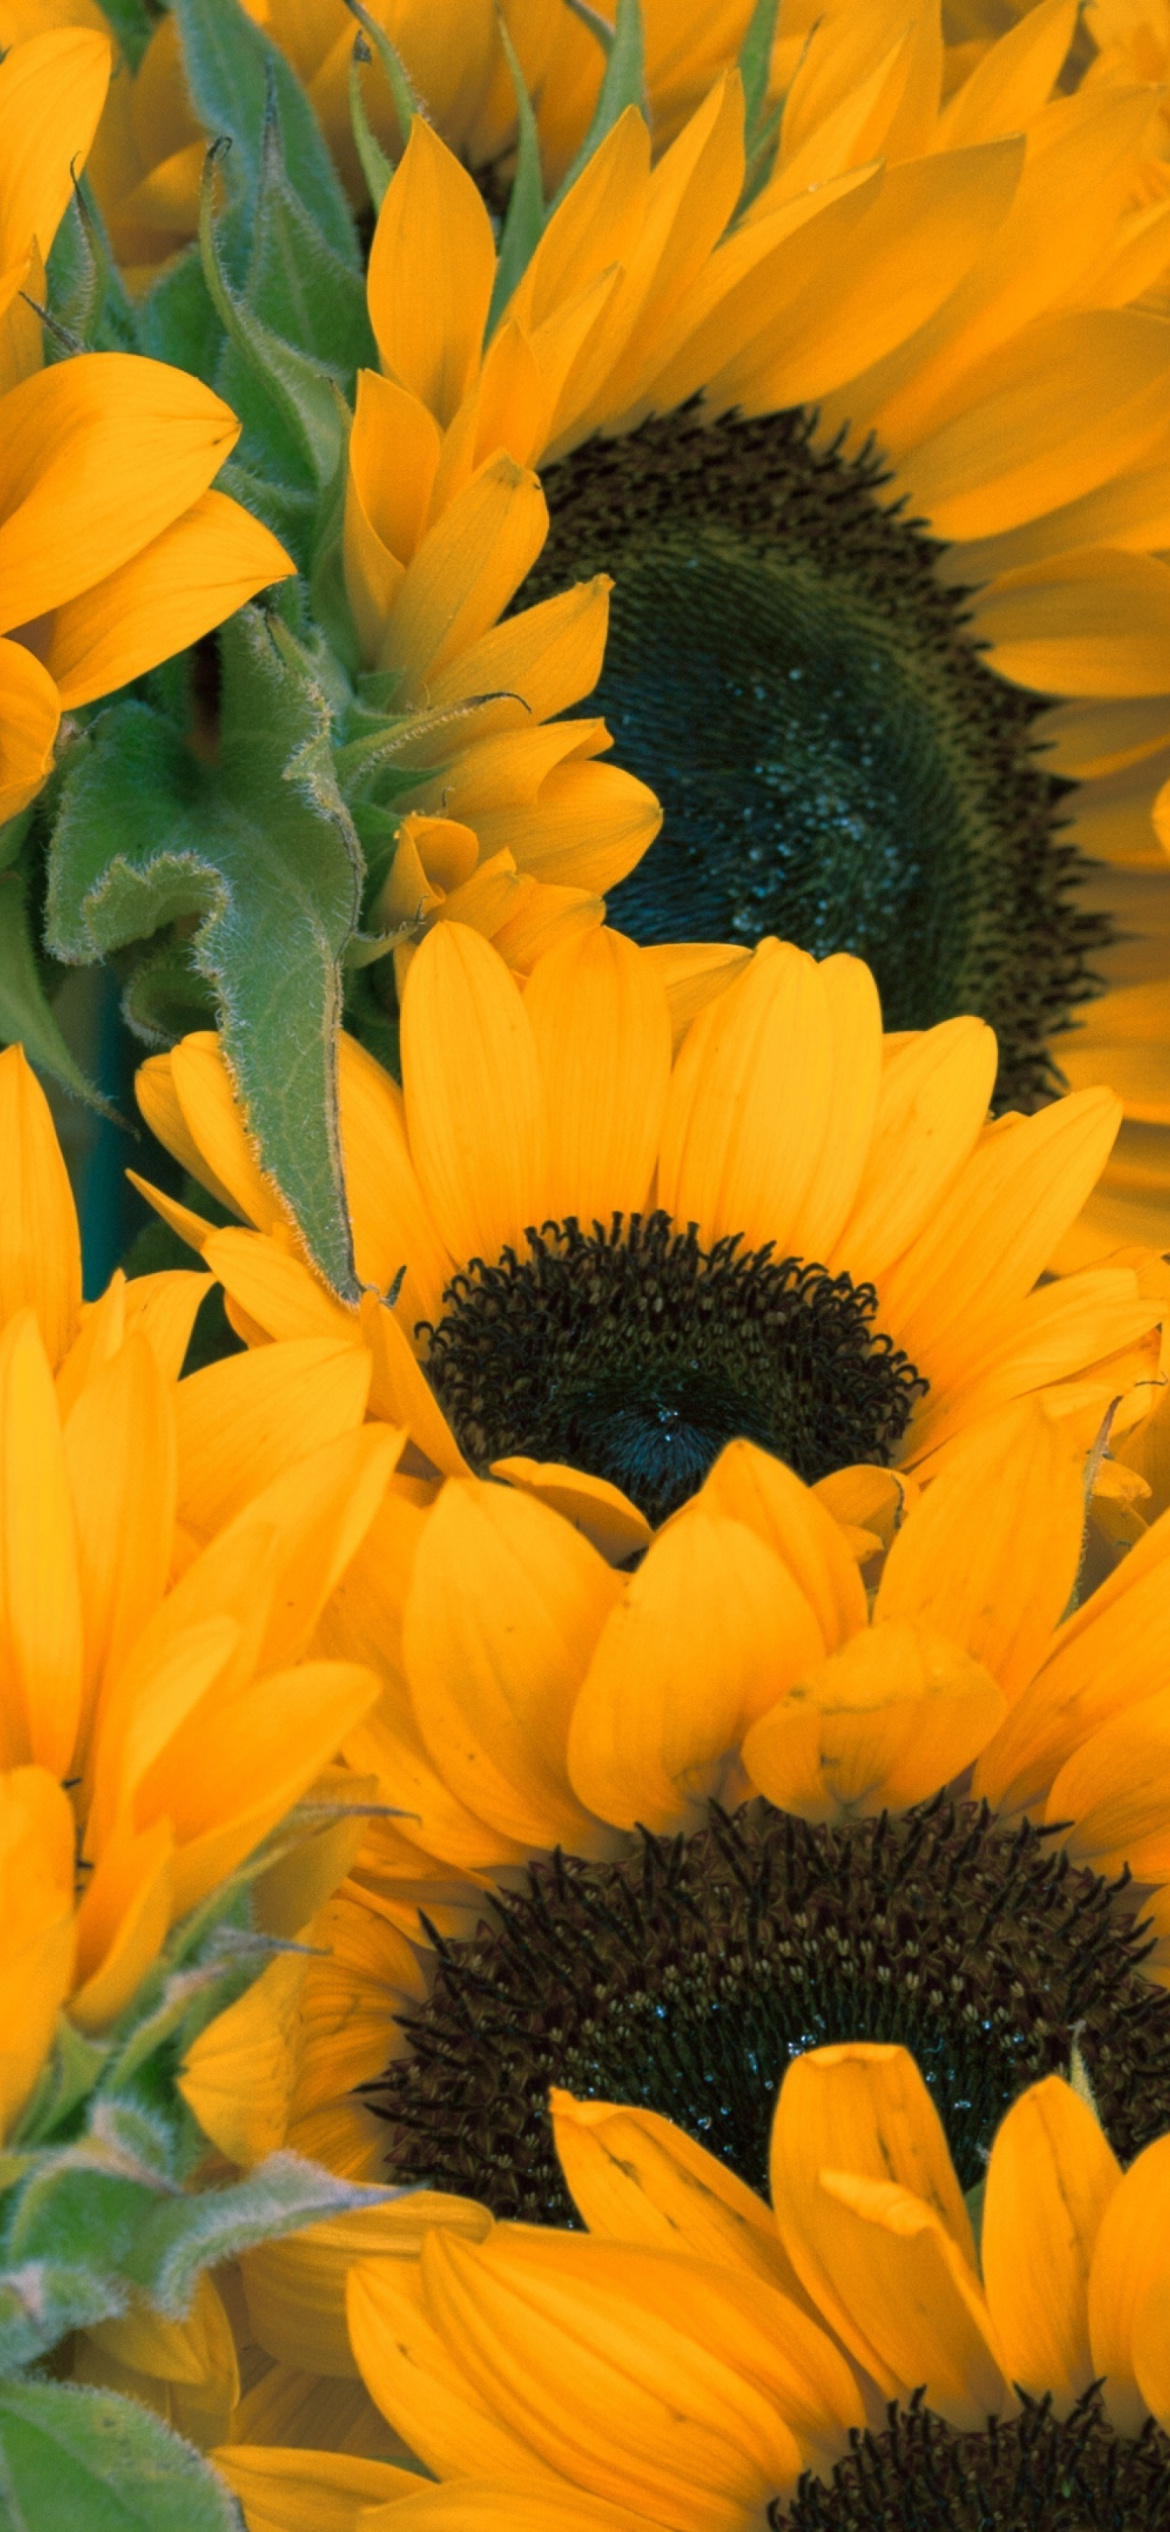 Обои Sunflowers 1170x2532